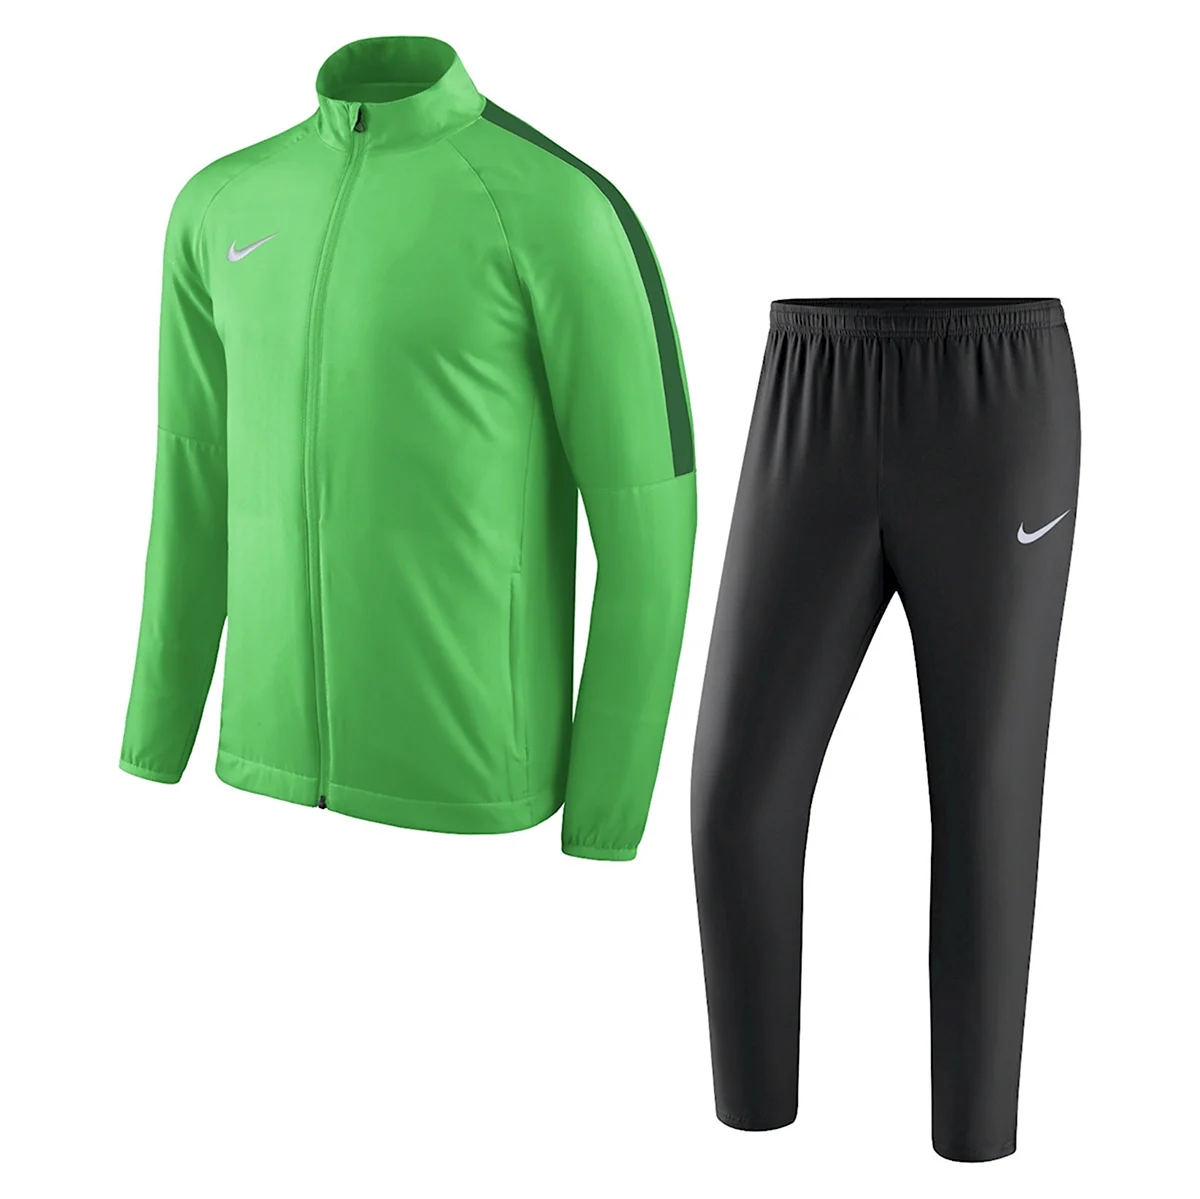 Nike Dry acdmy18 Trk Suit